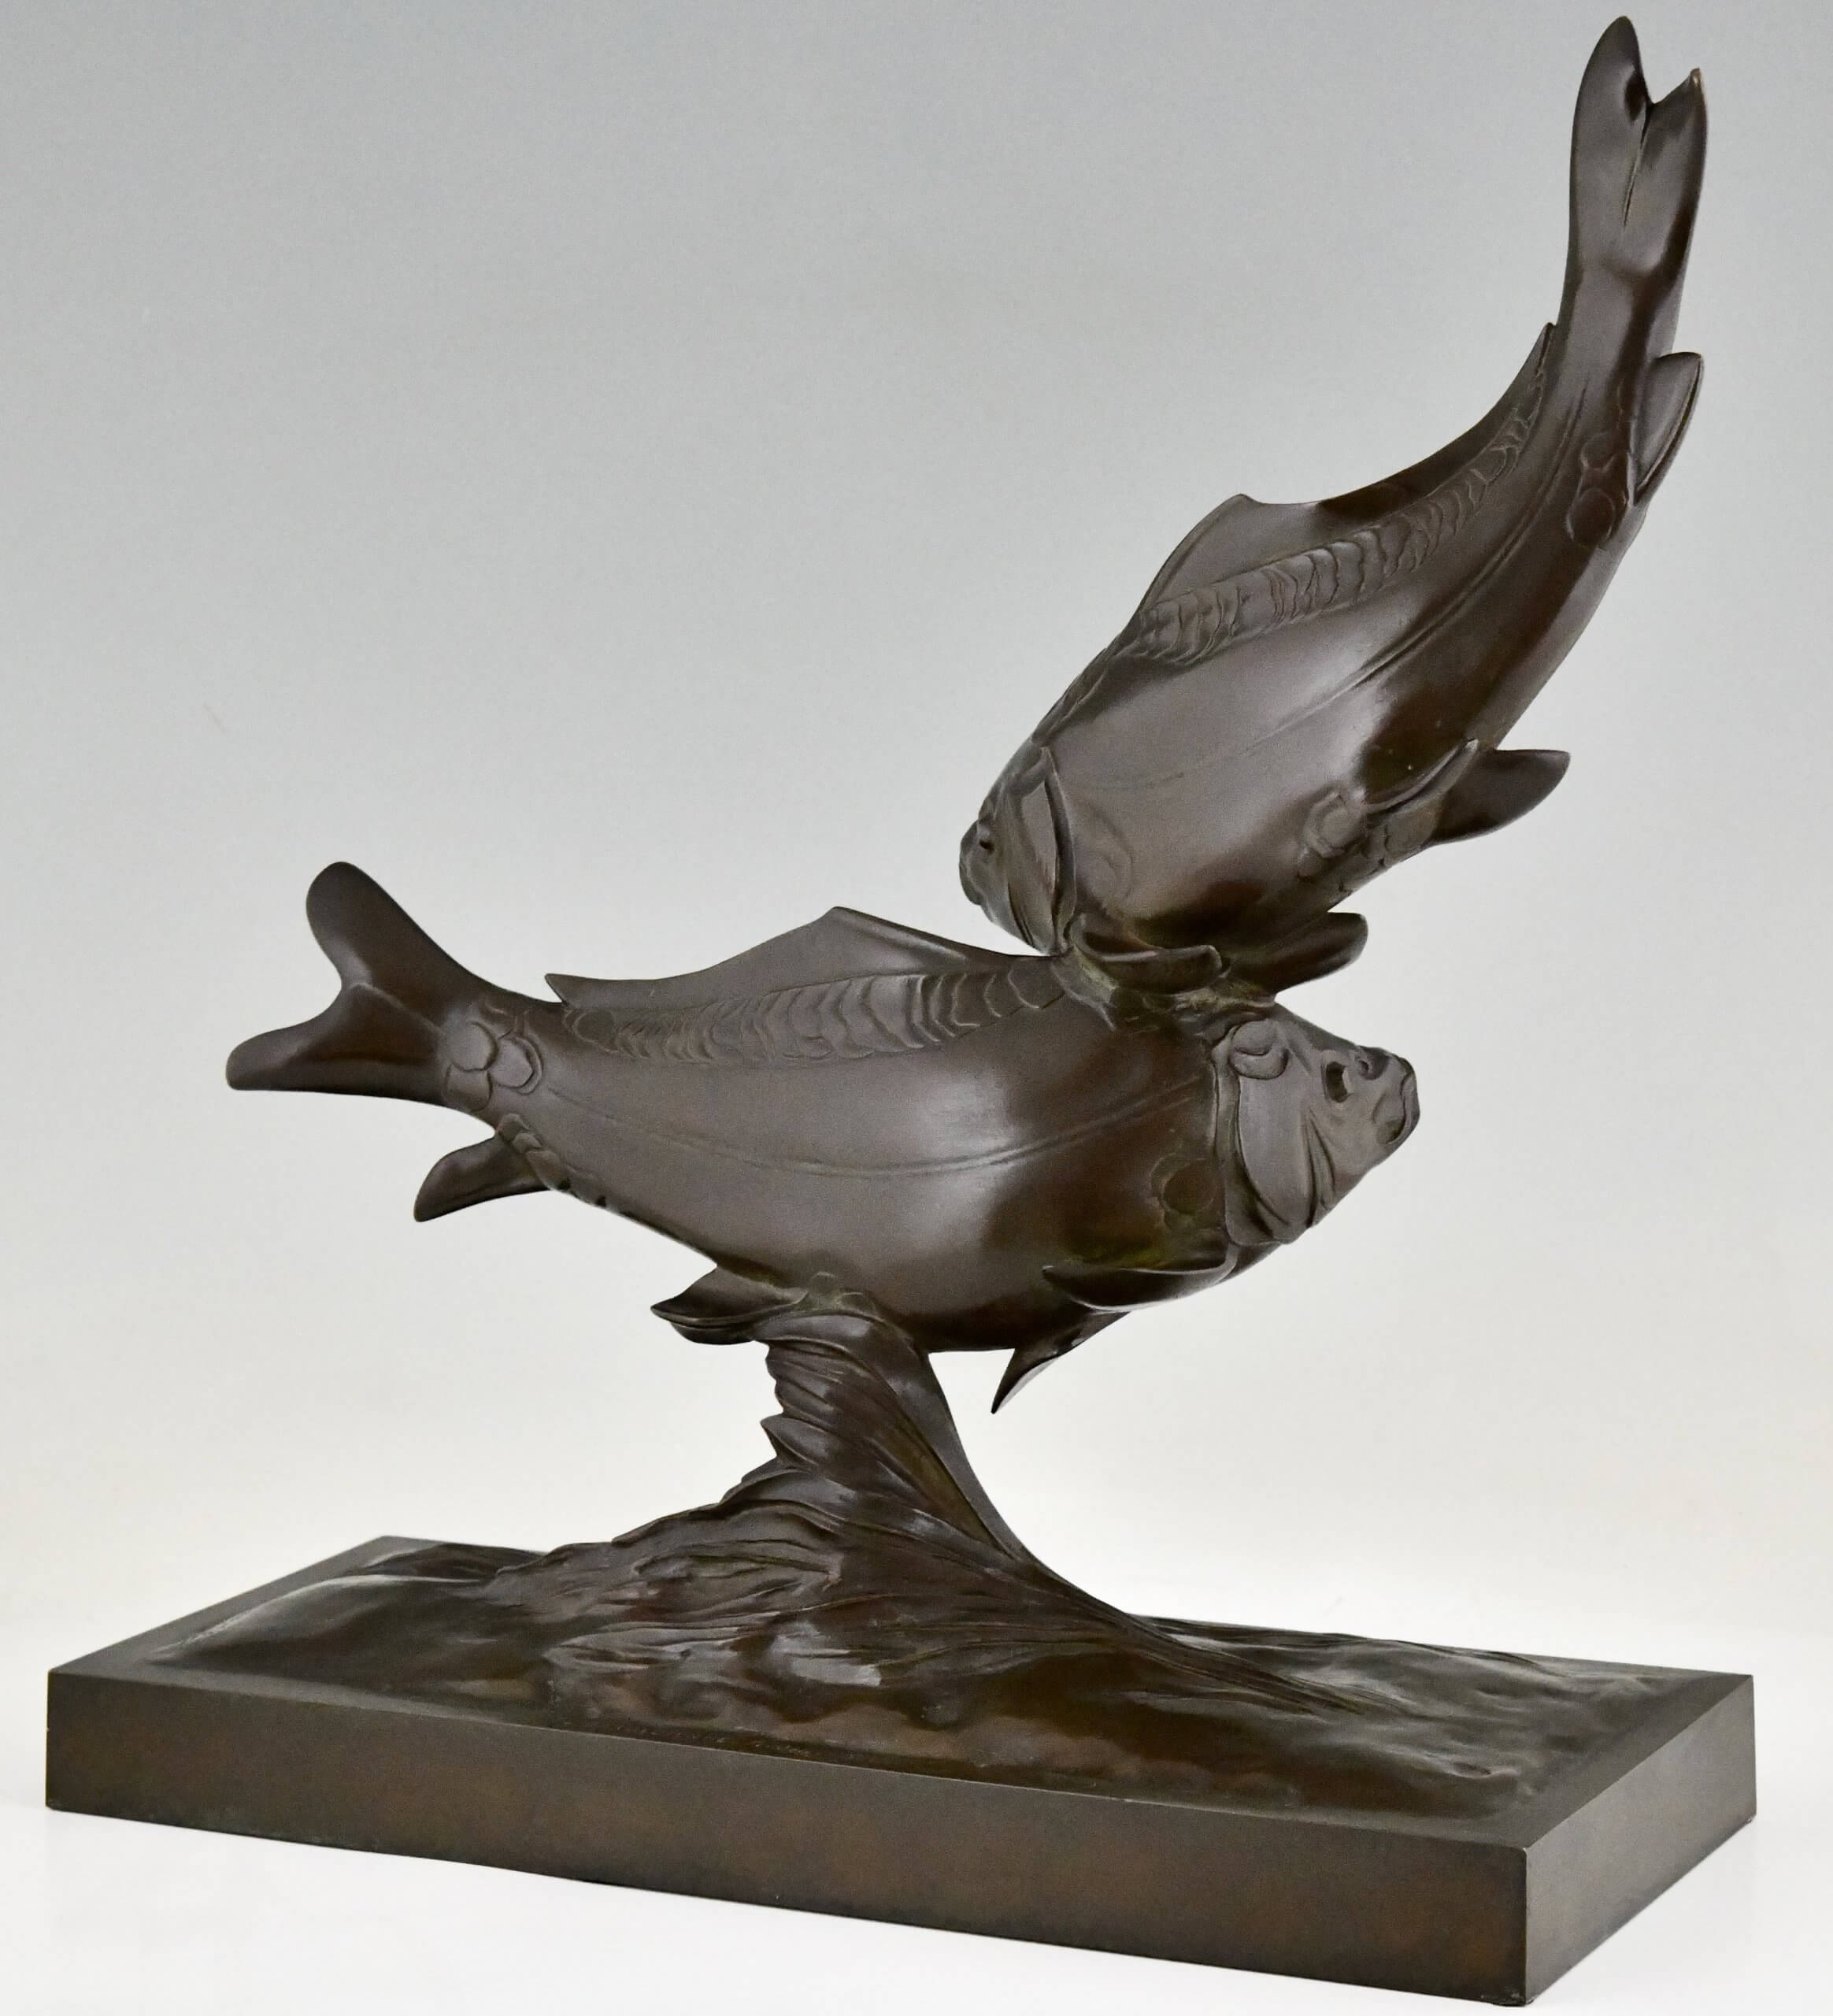 Art Deco bronzen sculptuur van twee karper vissen